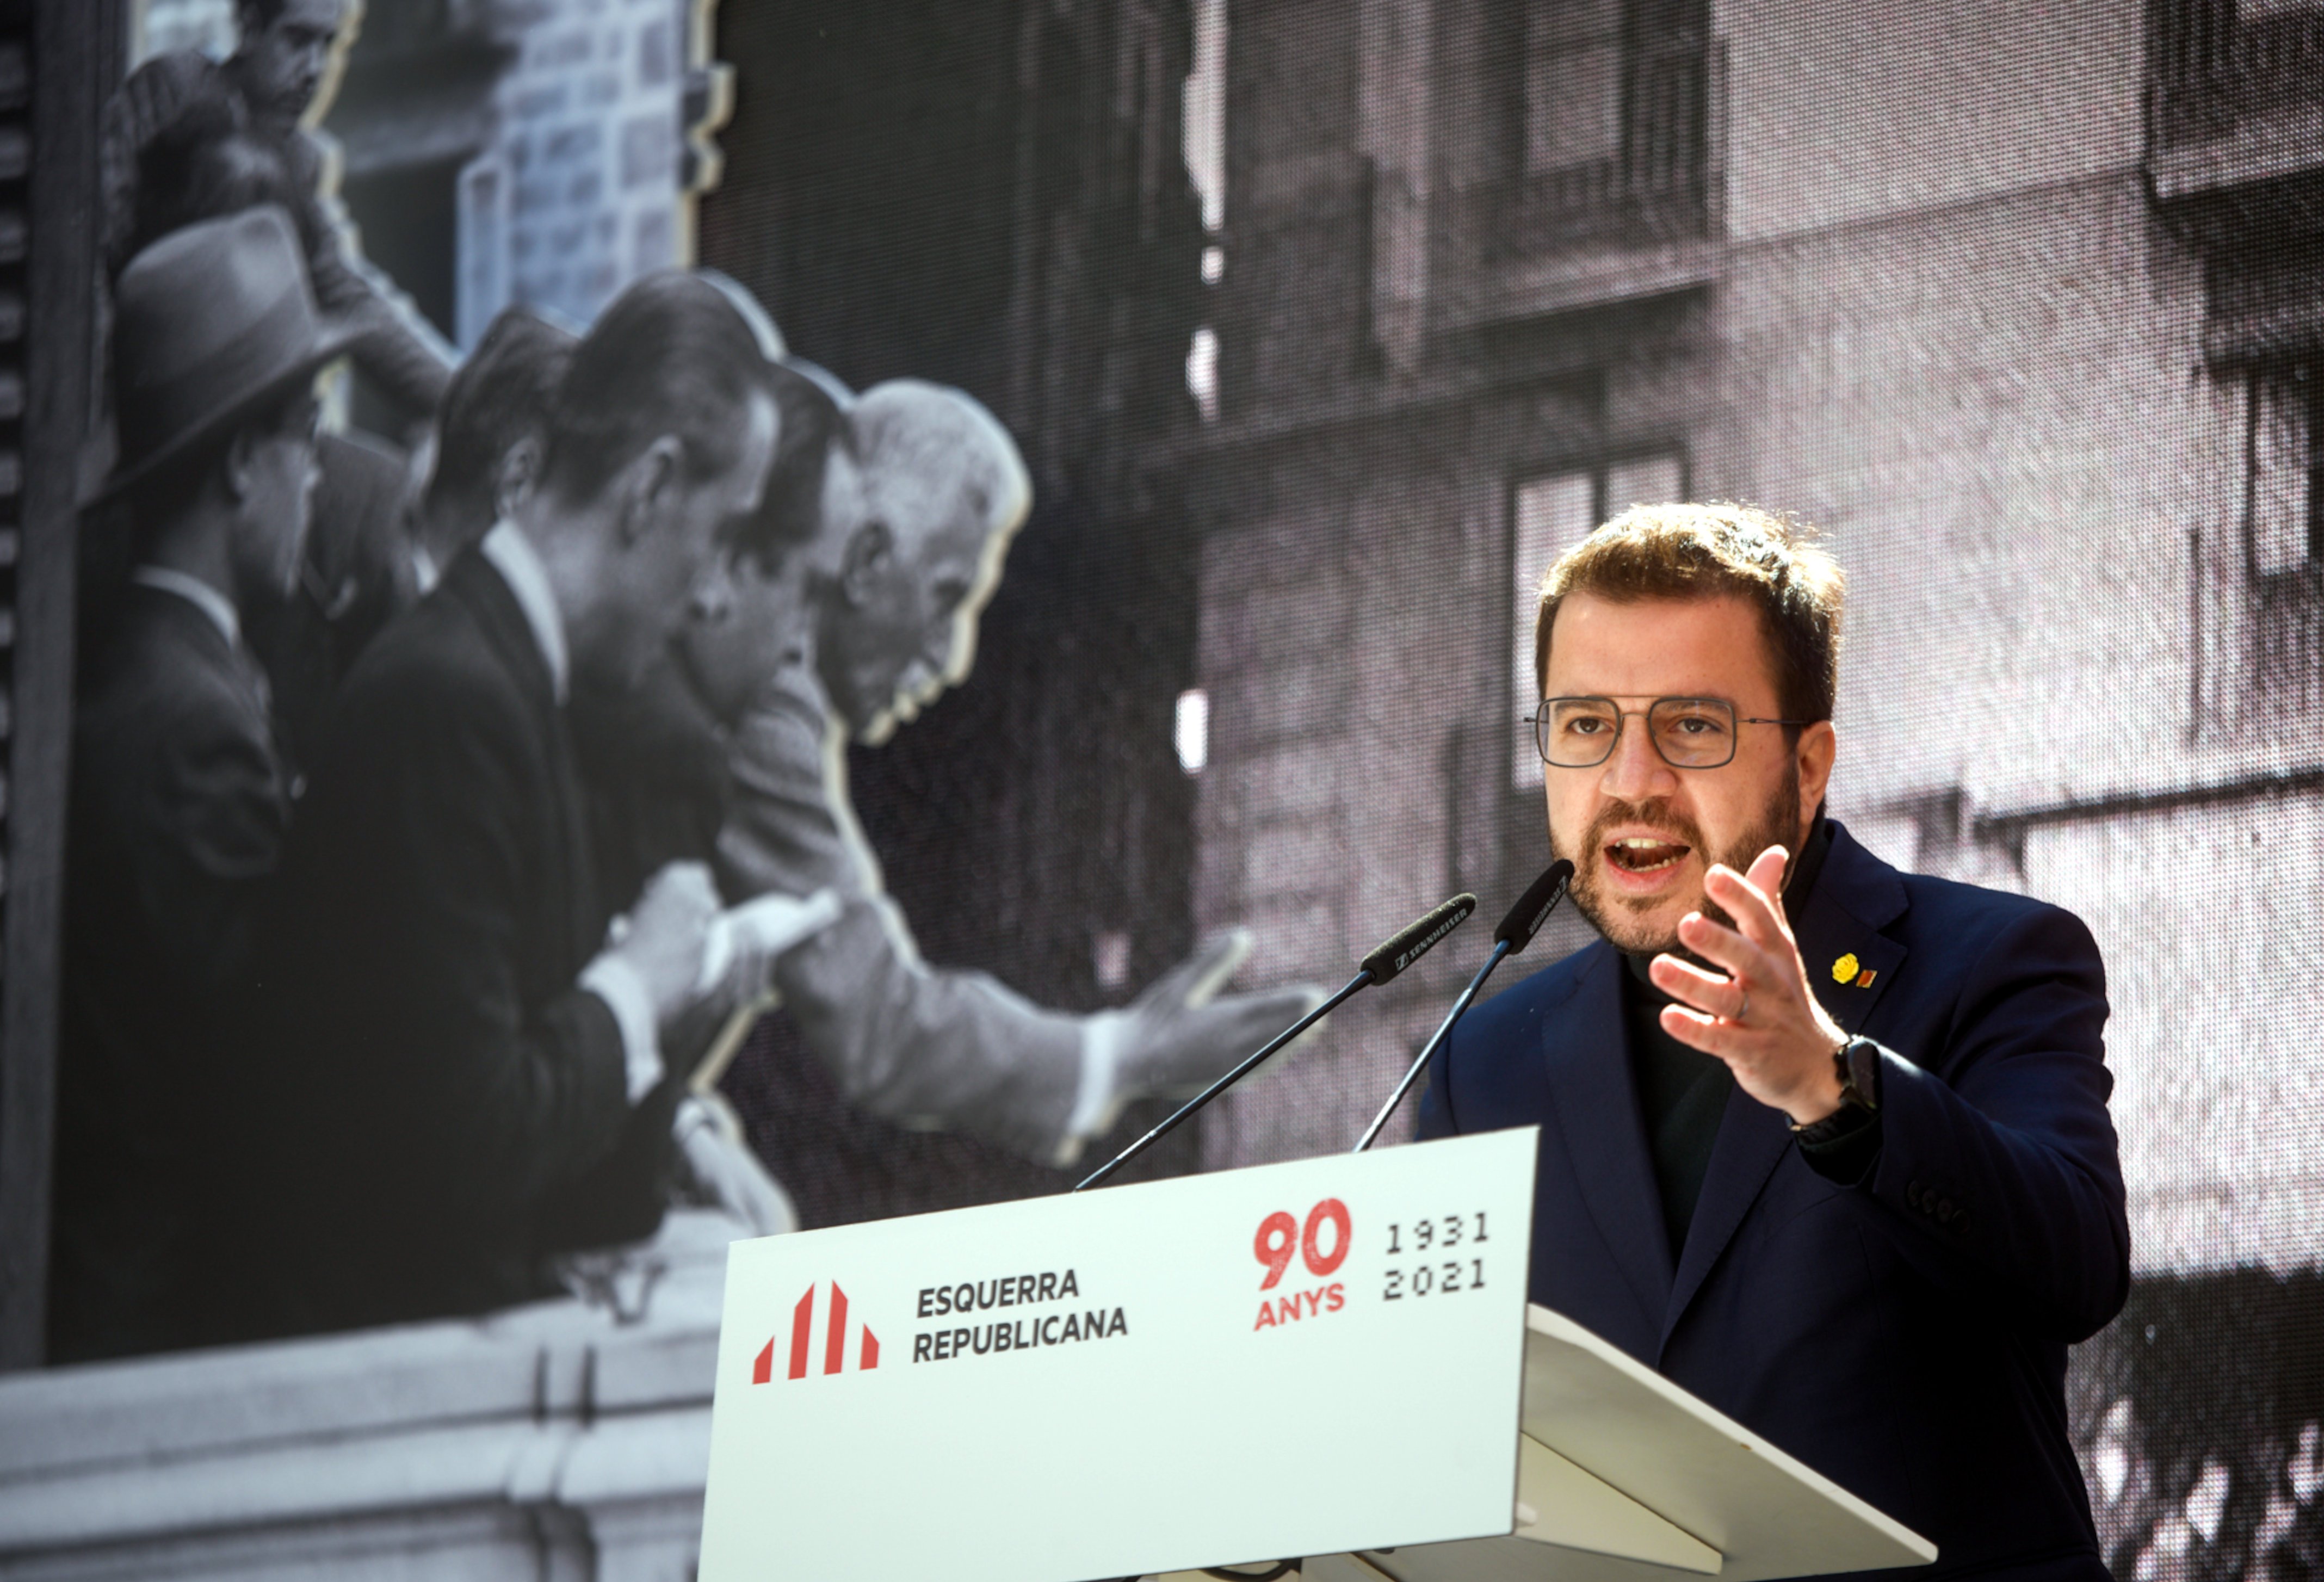 Aragonès reclama construir "sense demora" un Govern fort de grans consensos